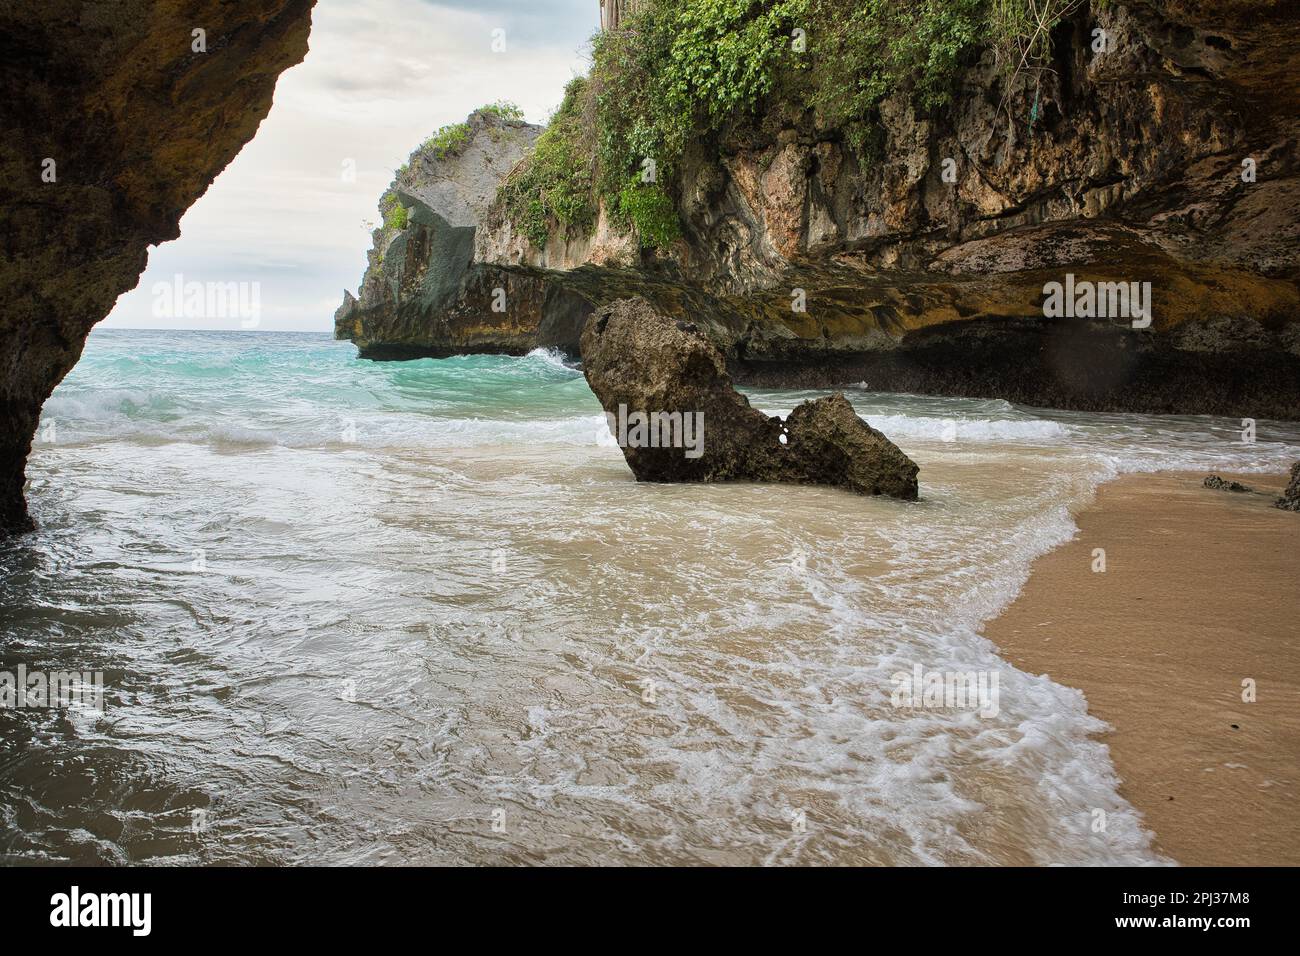 Der sulubanische Strand in Bali, Indonesien, umgeben von einer Bucht mit majestätischen Felsen. Stockfoto